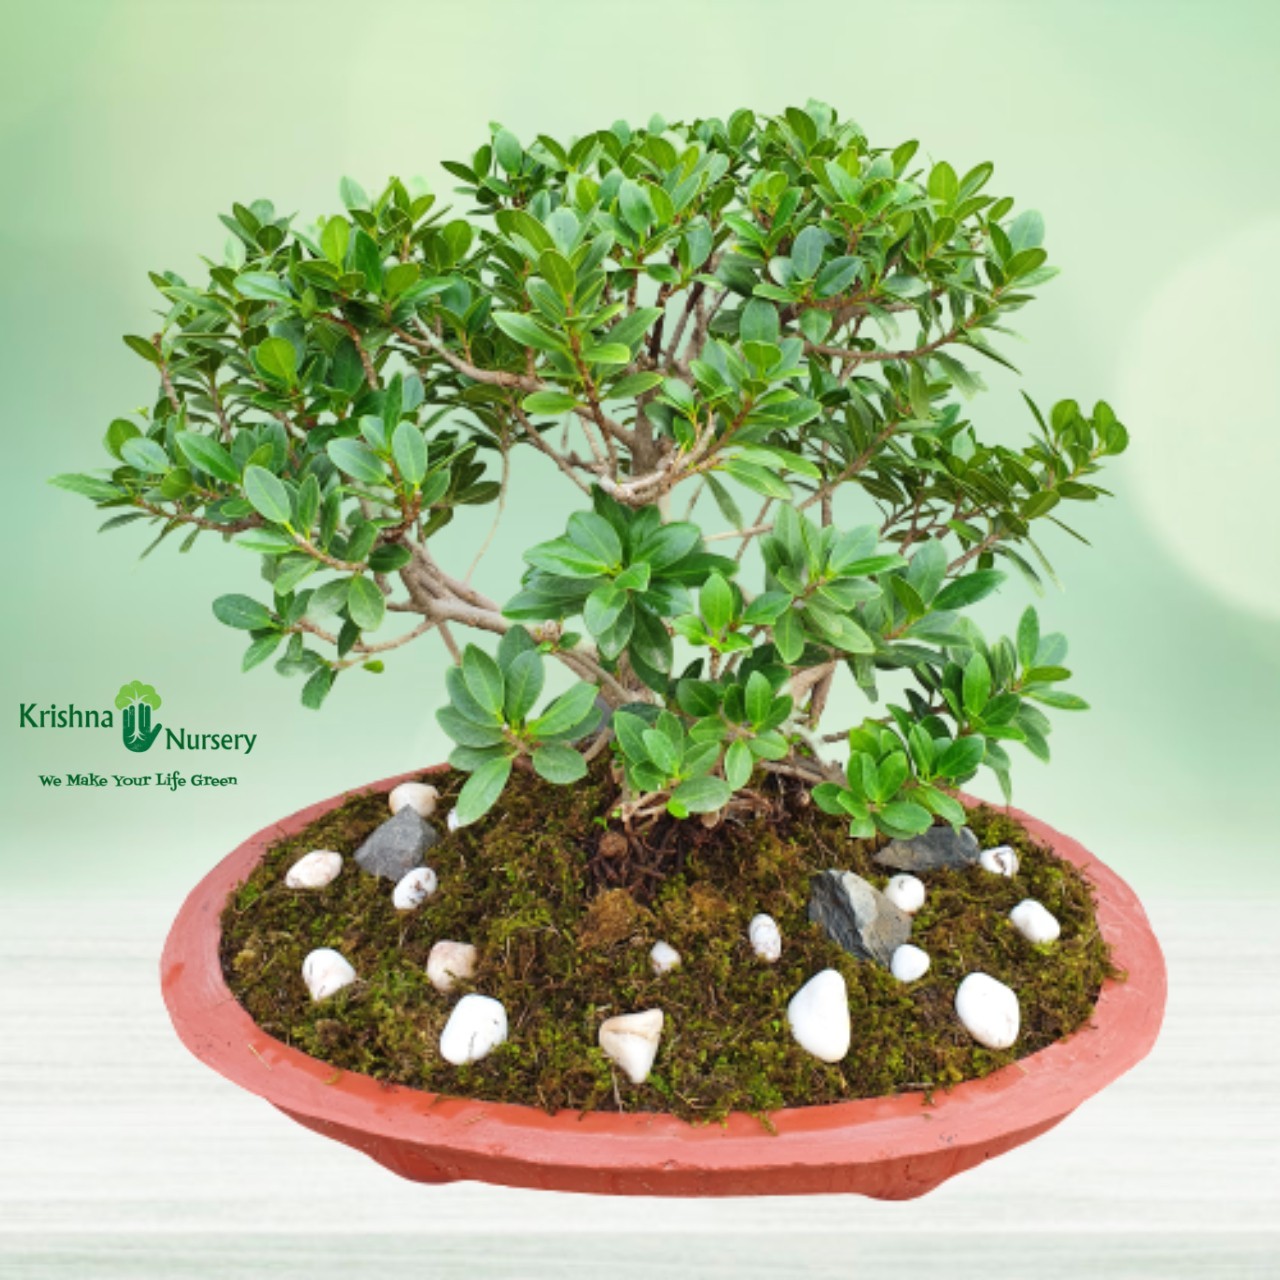 Ficus Long Island Bonsai - 18 inch - Red Pot